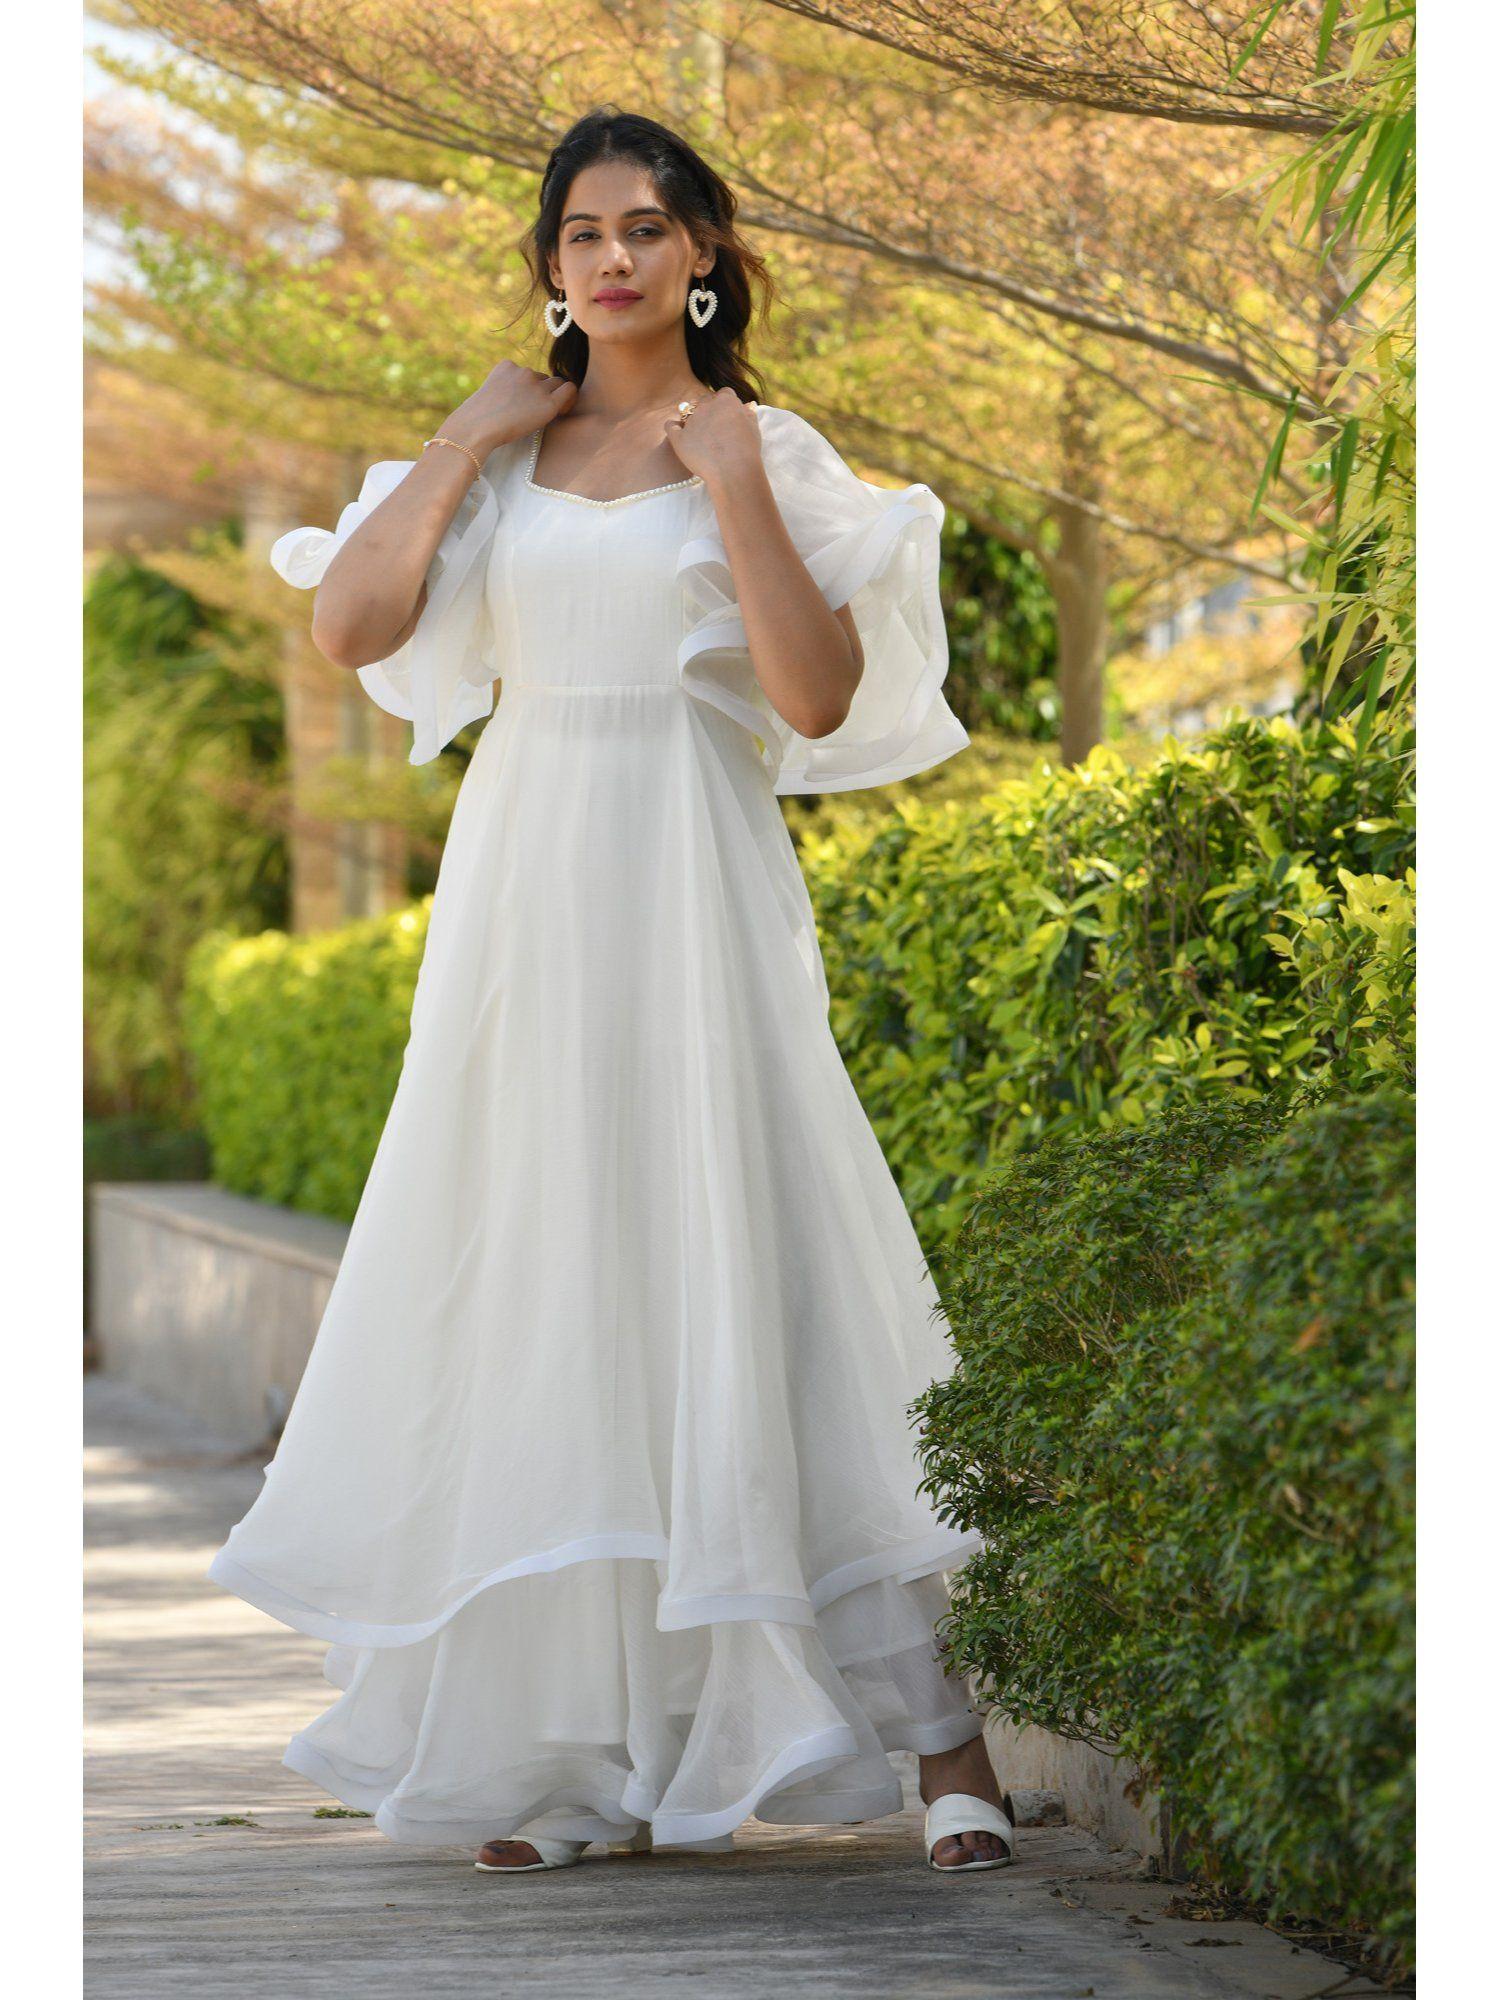 libni pearl off white chiffon layered dress